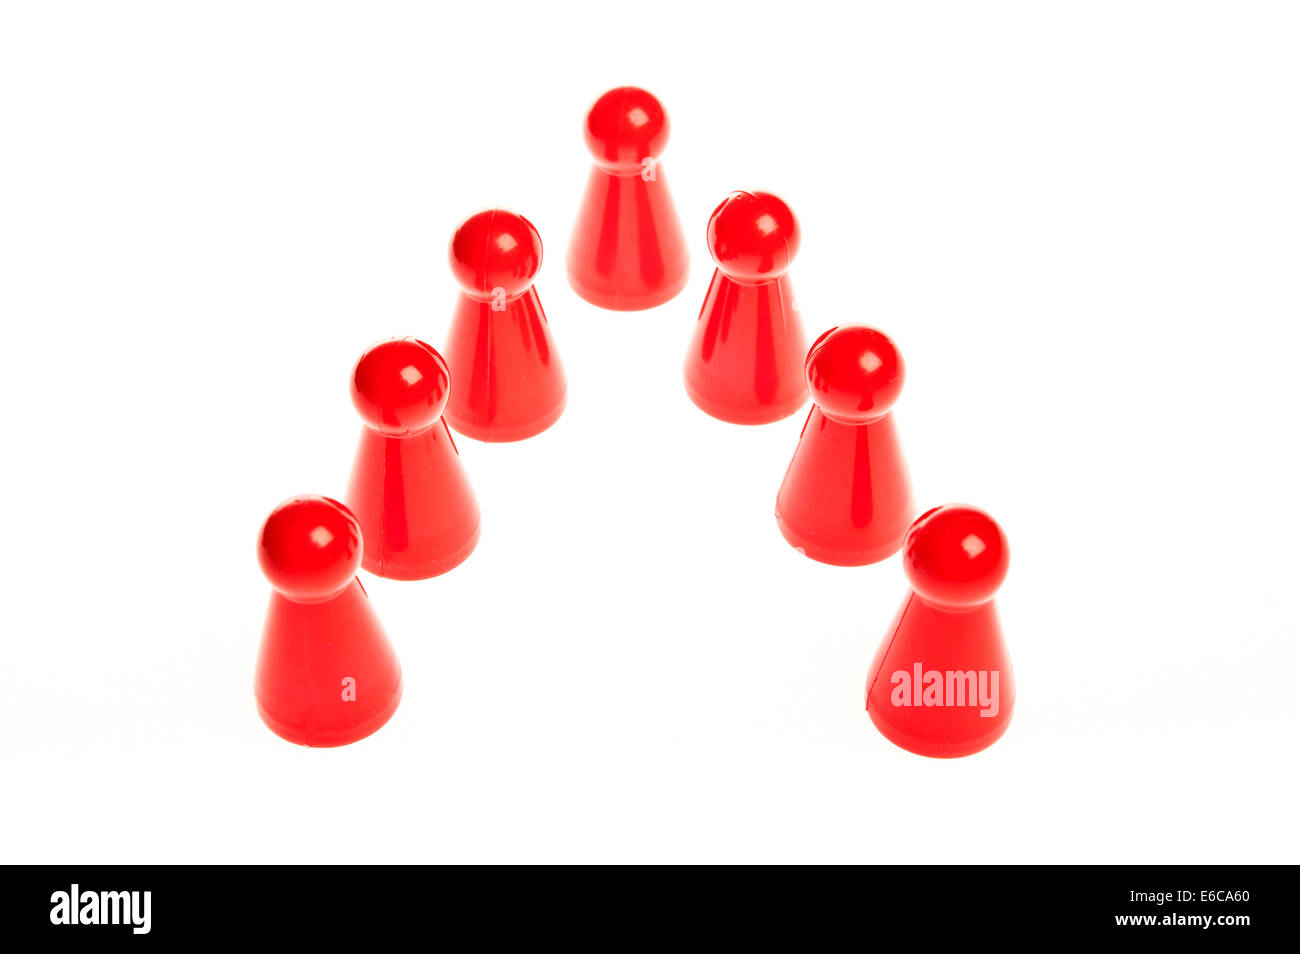 Reihe von sieben roten Schaltern, Teamwork Konzept Stockfoto